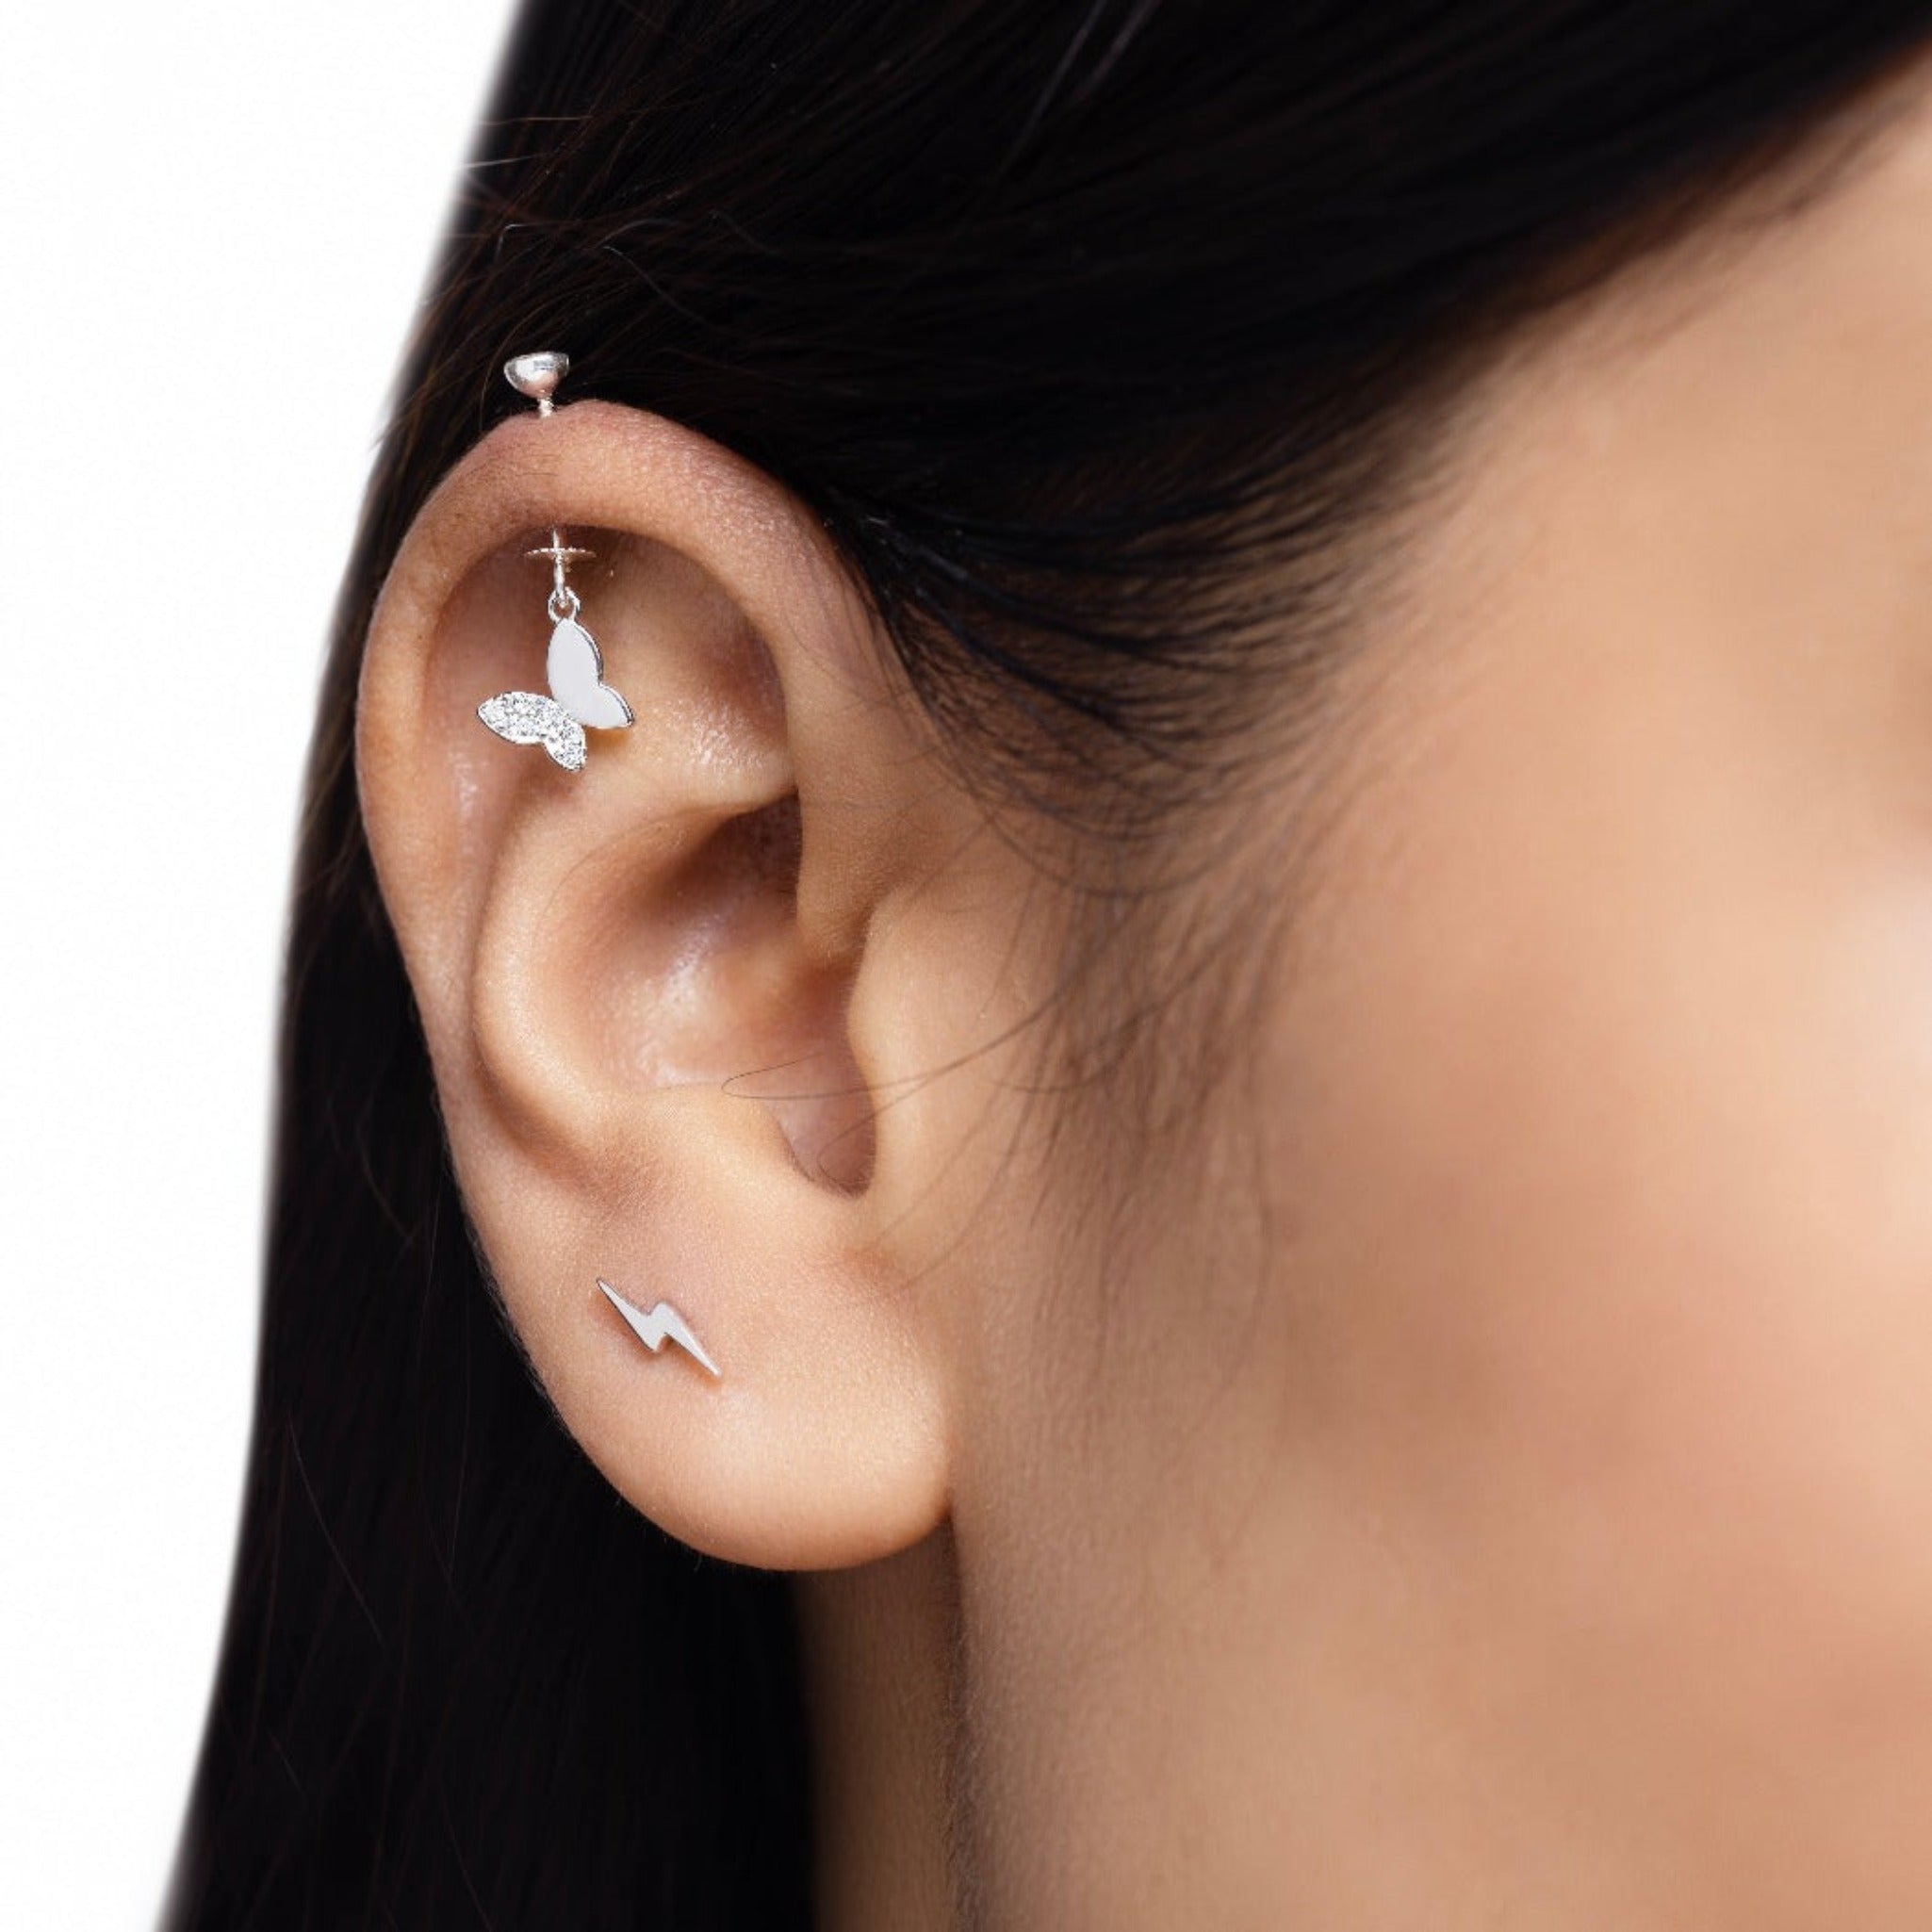 Update 242+ upper earrings gold design latest